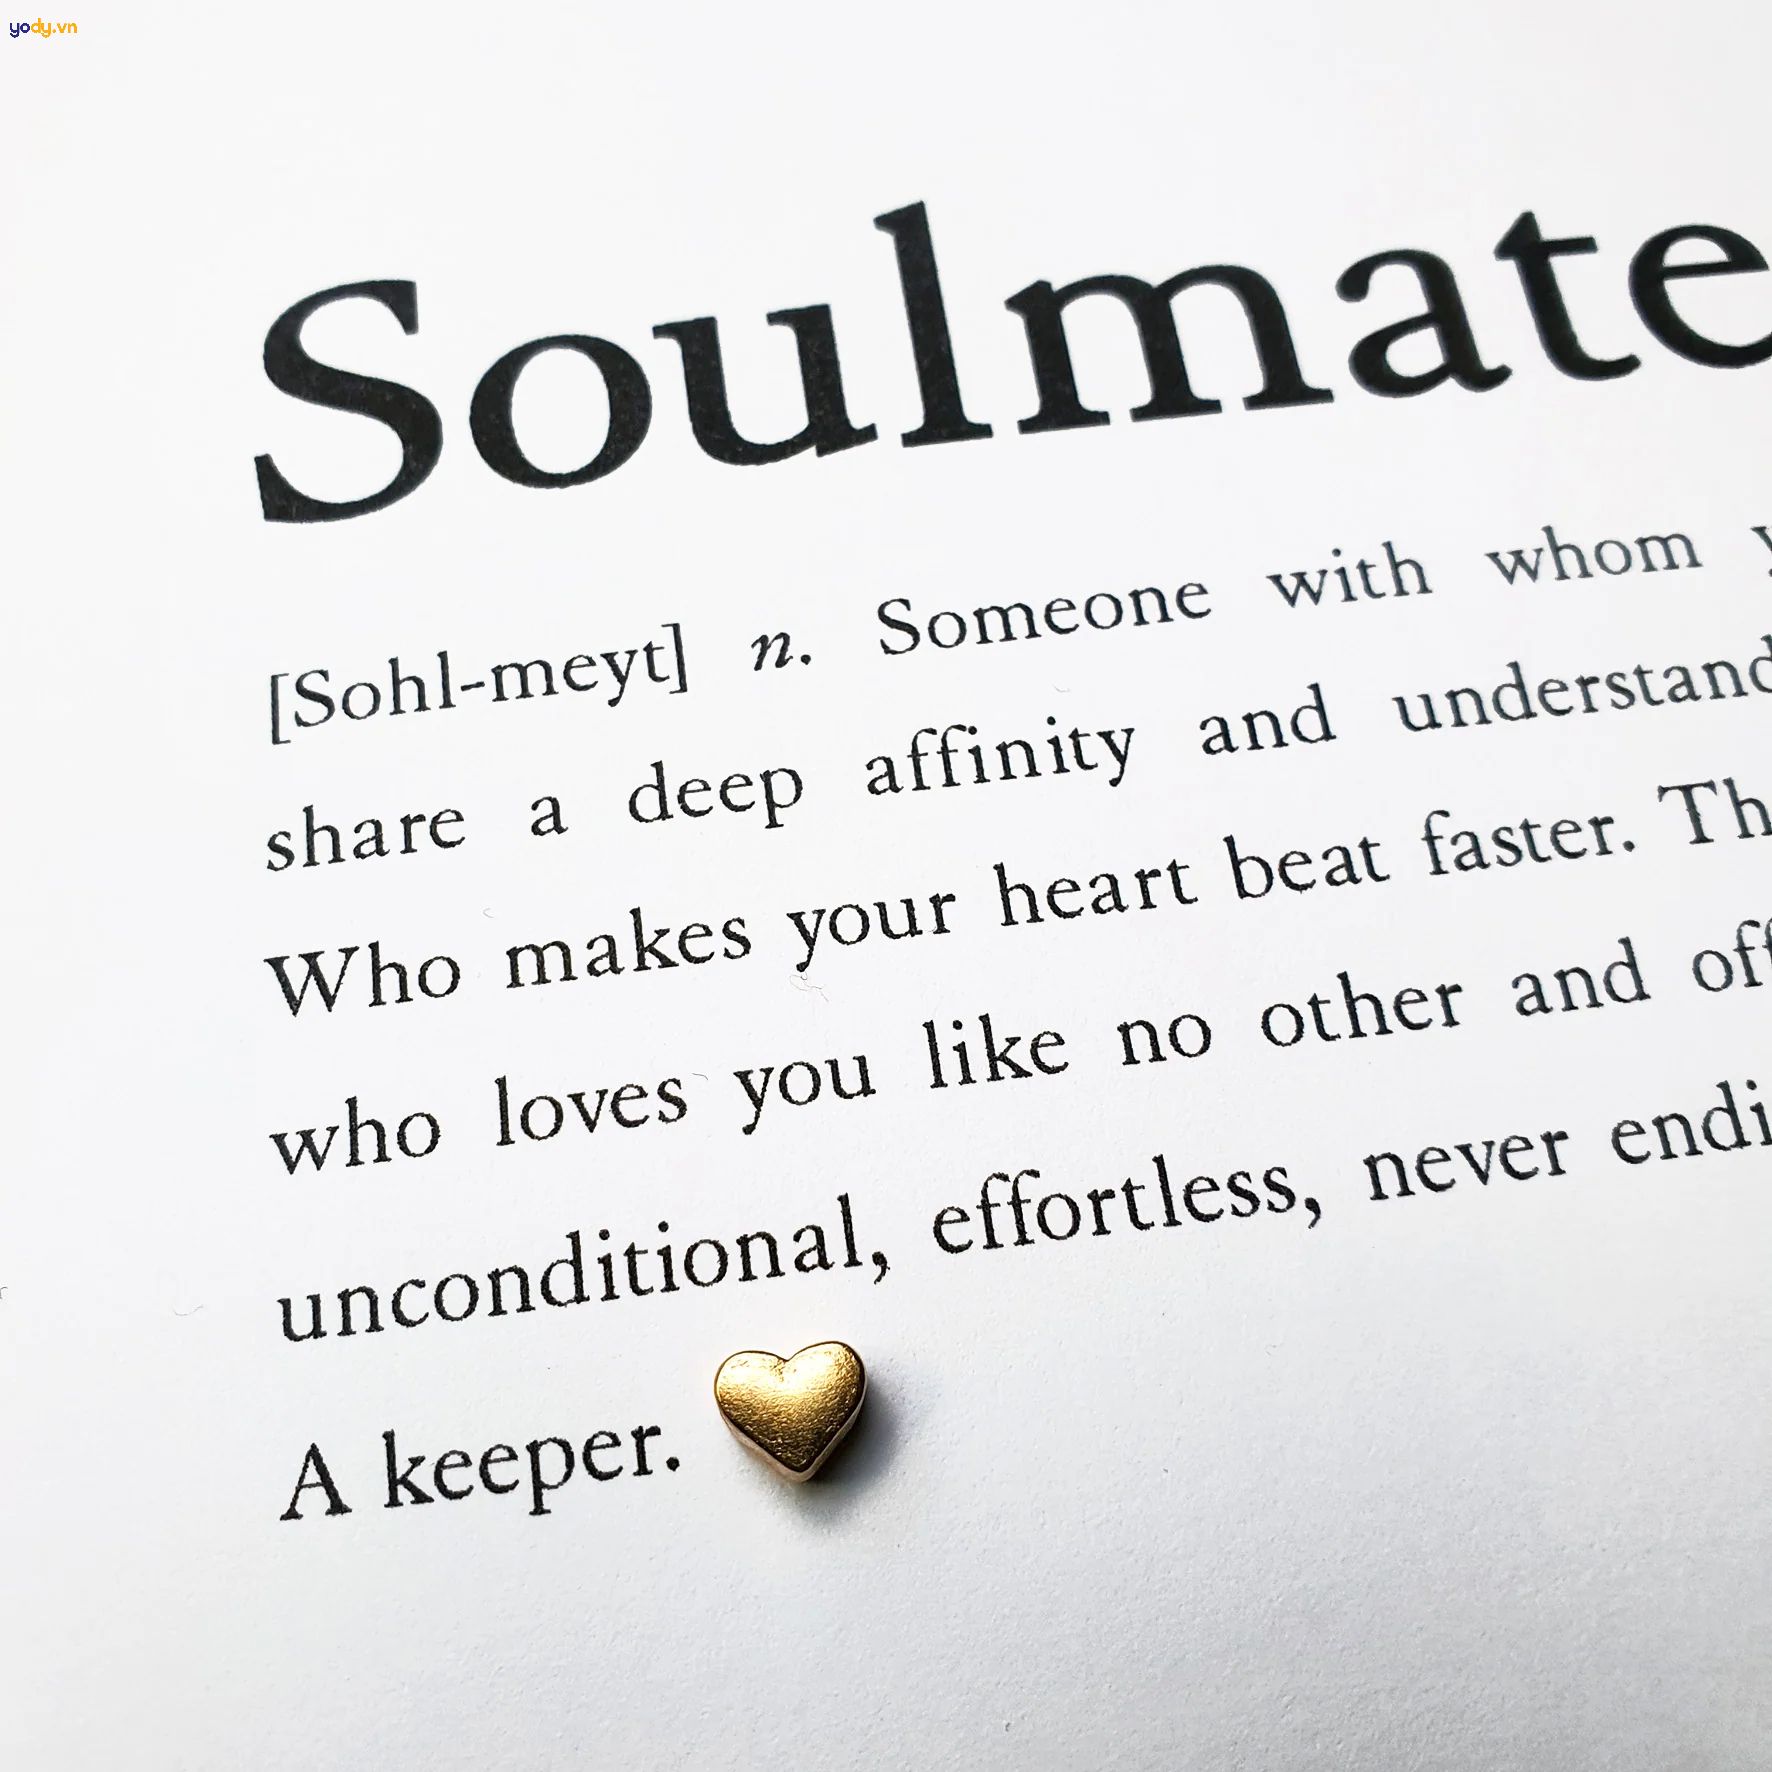 Soulmate nghĩa là gì